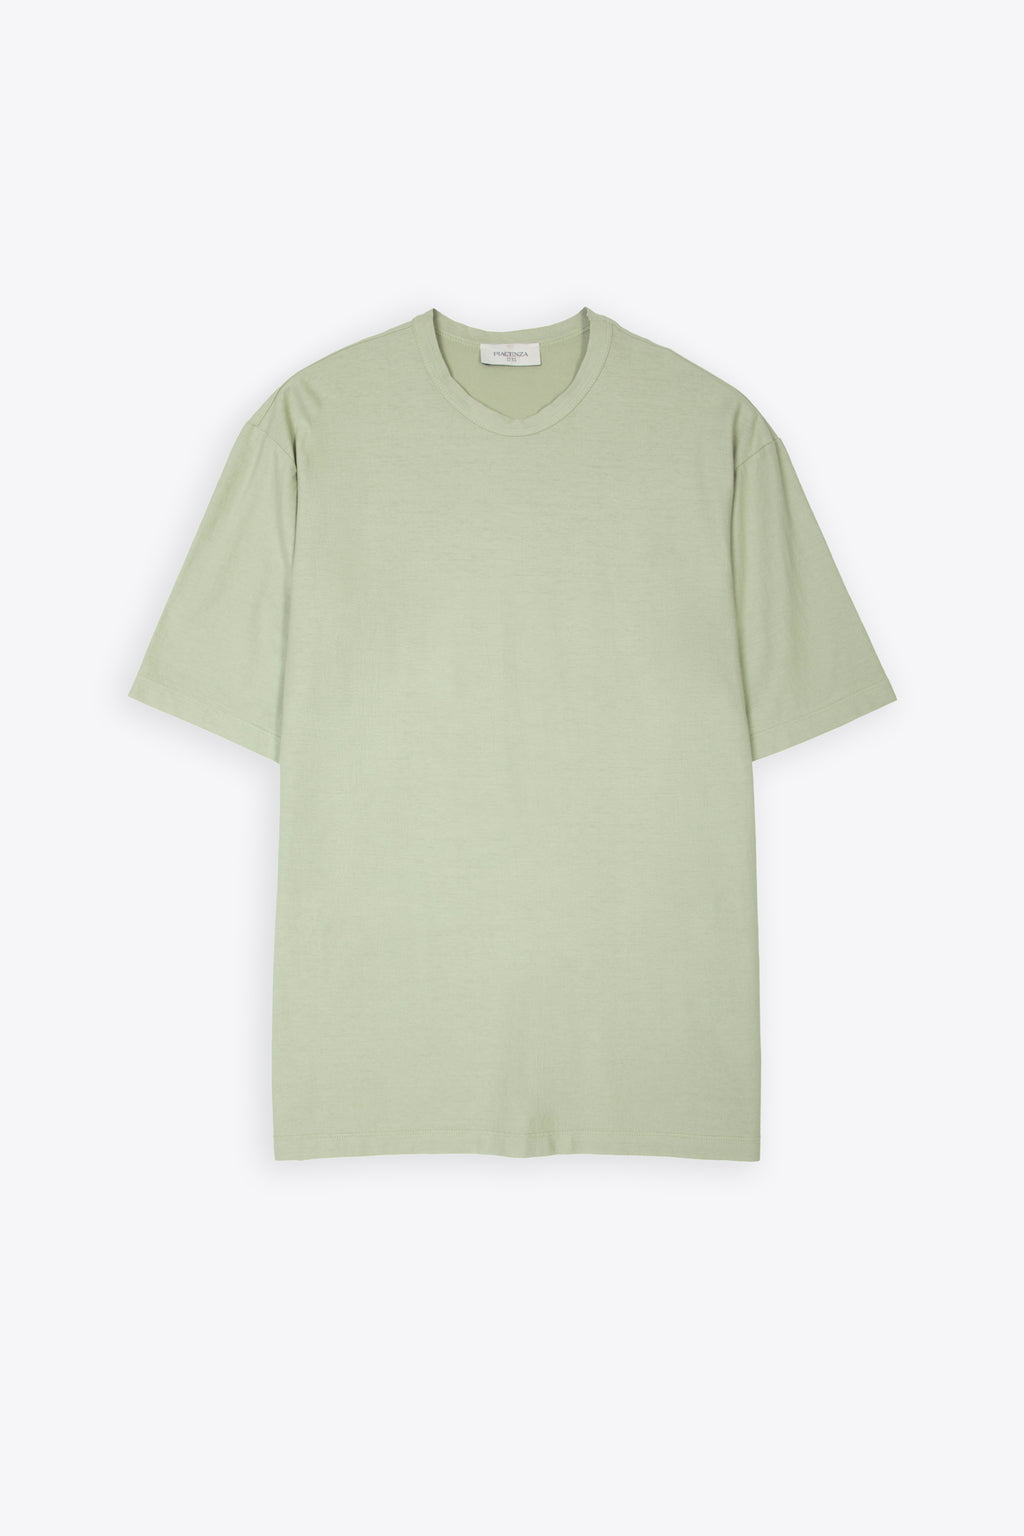 alt-image__Sage-green-lightweight-cotton-t-shirt